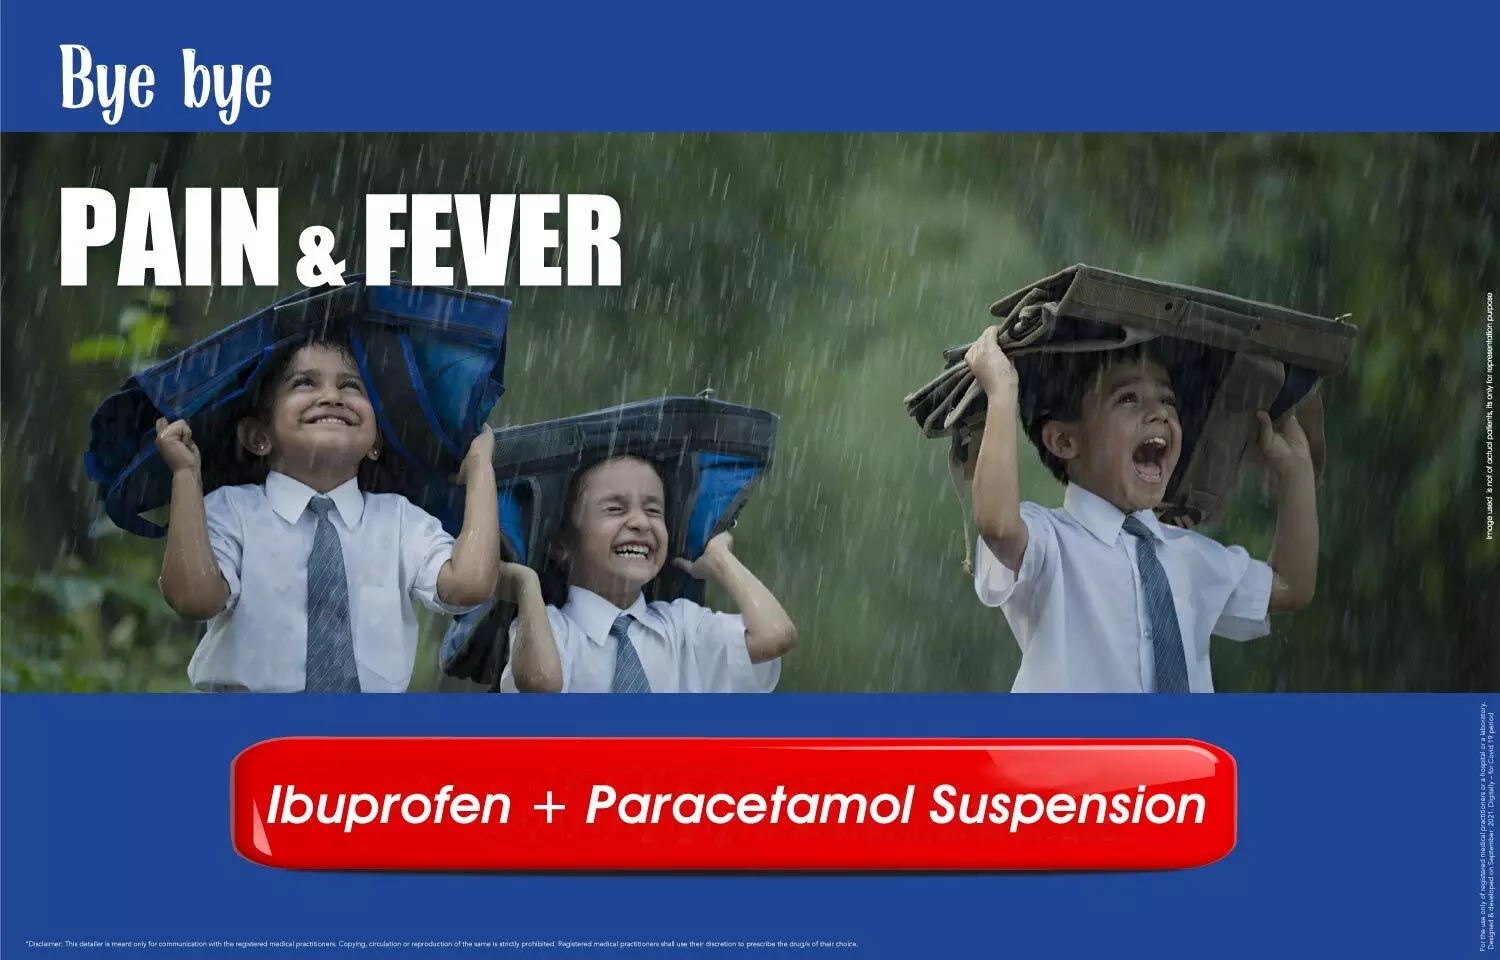 Therapeutic Potential of Ibuprofen-Paracetamol Combination for Use in Children